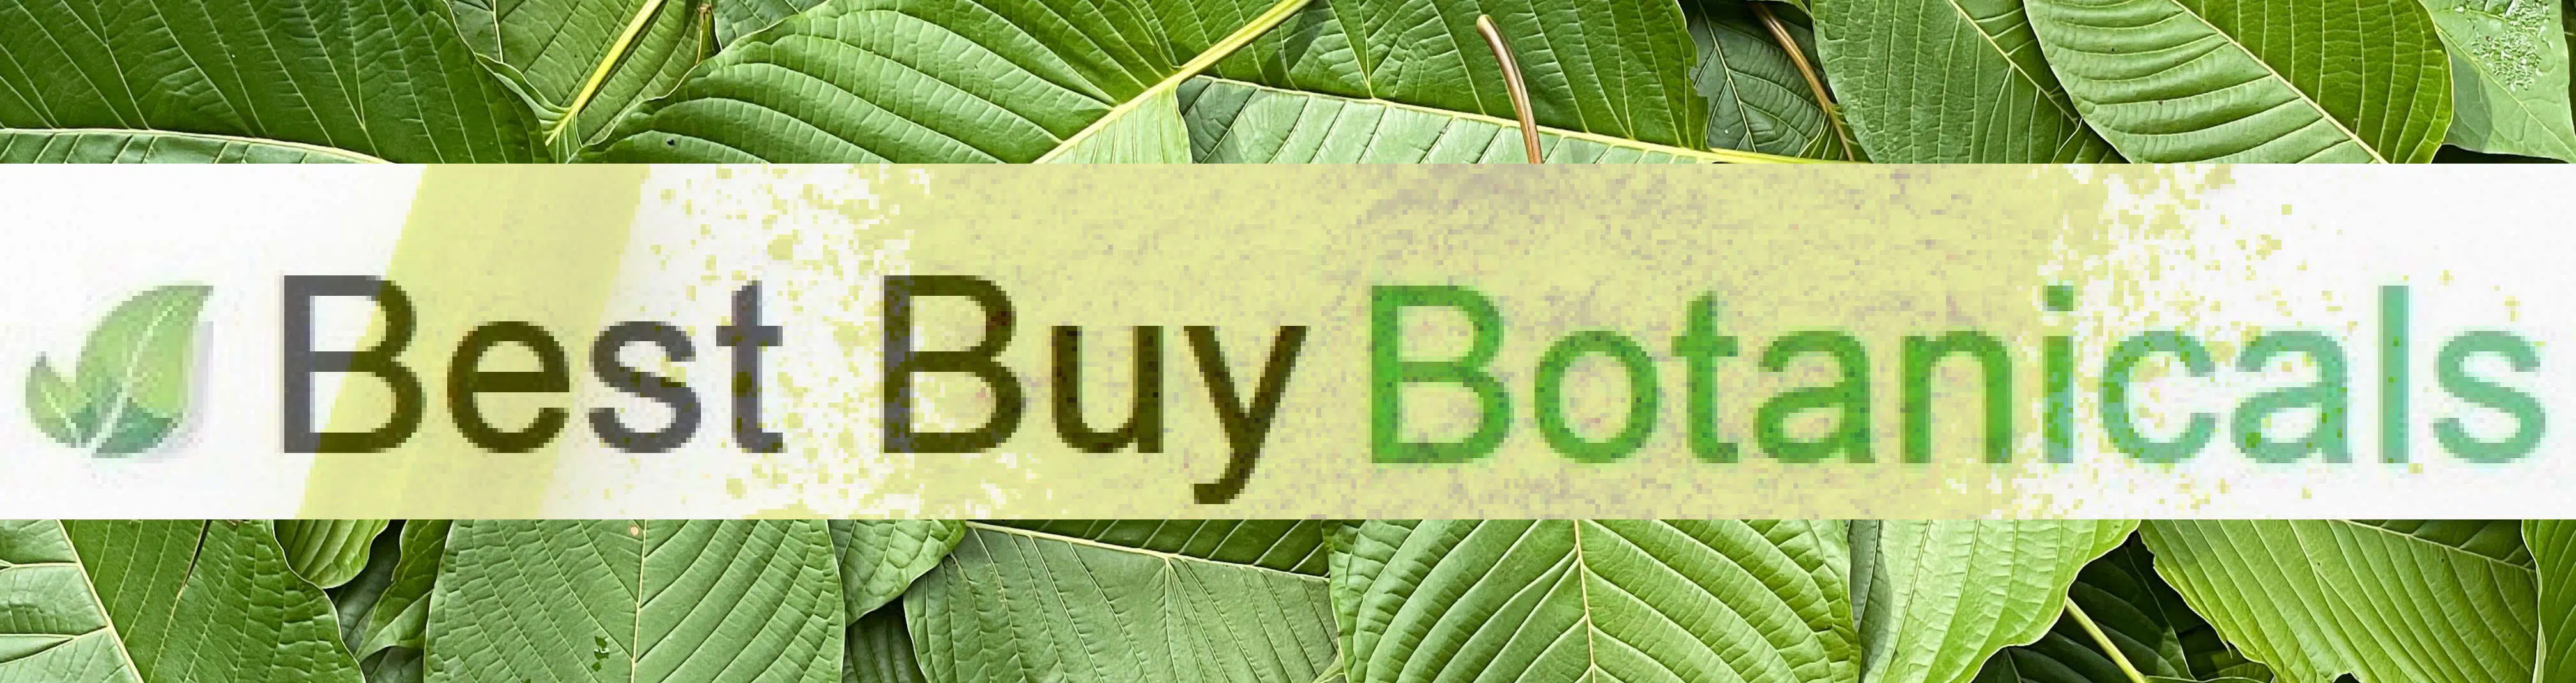 image of best buy botanicals logo